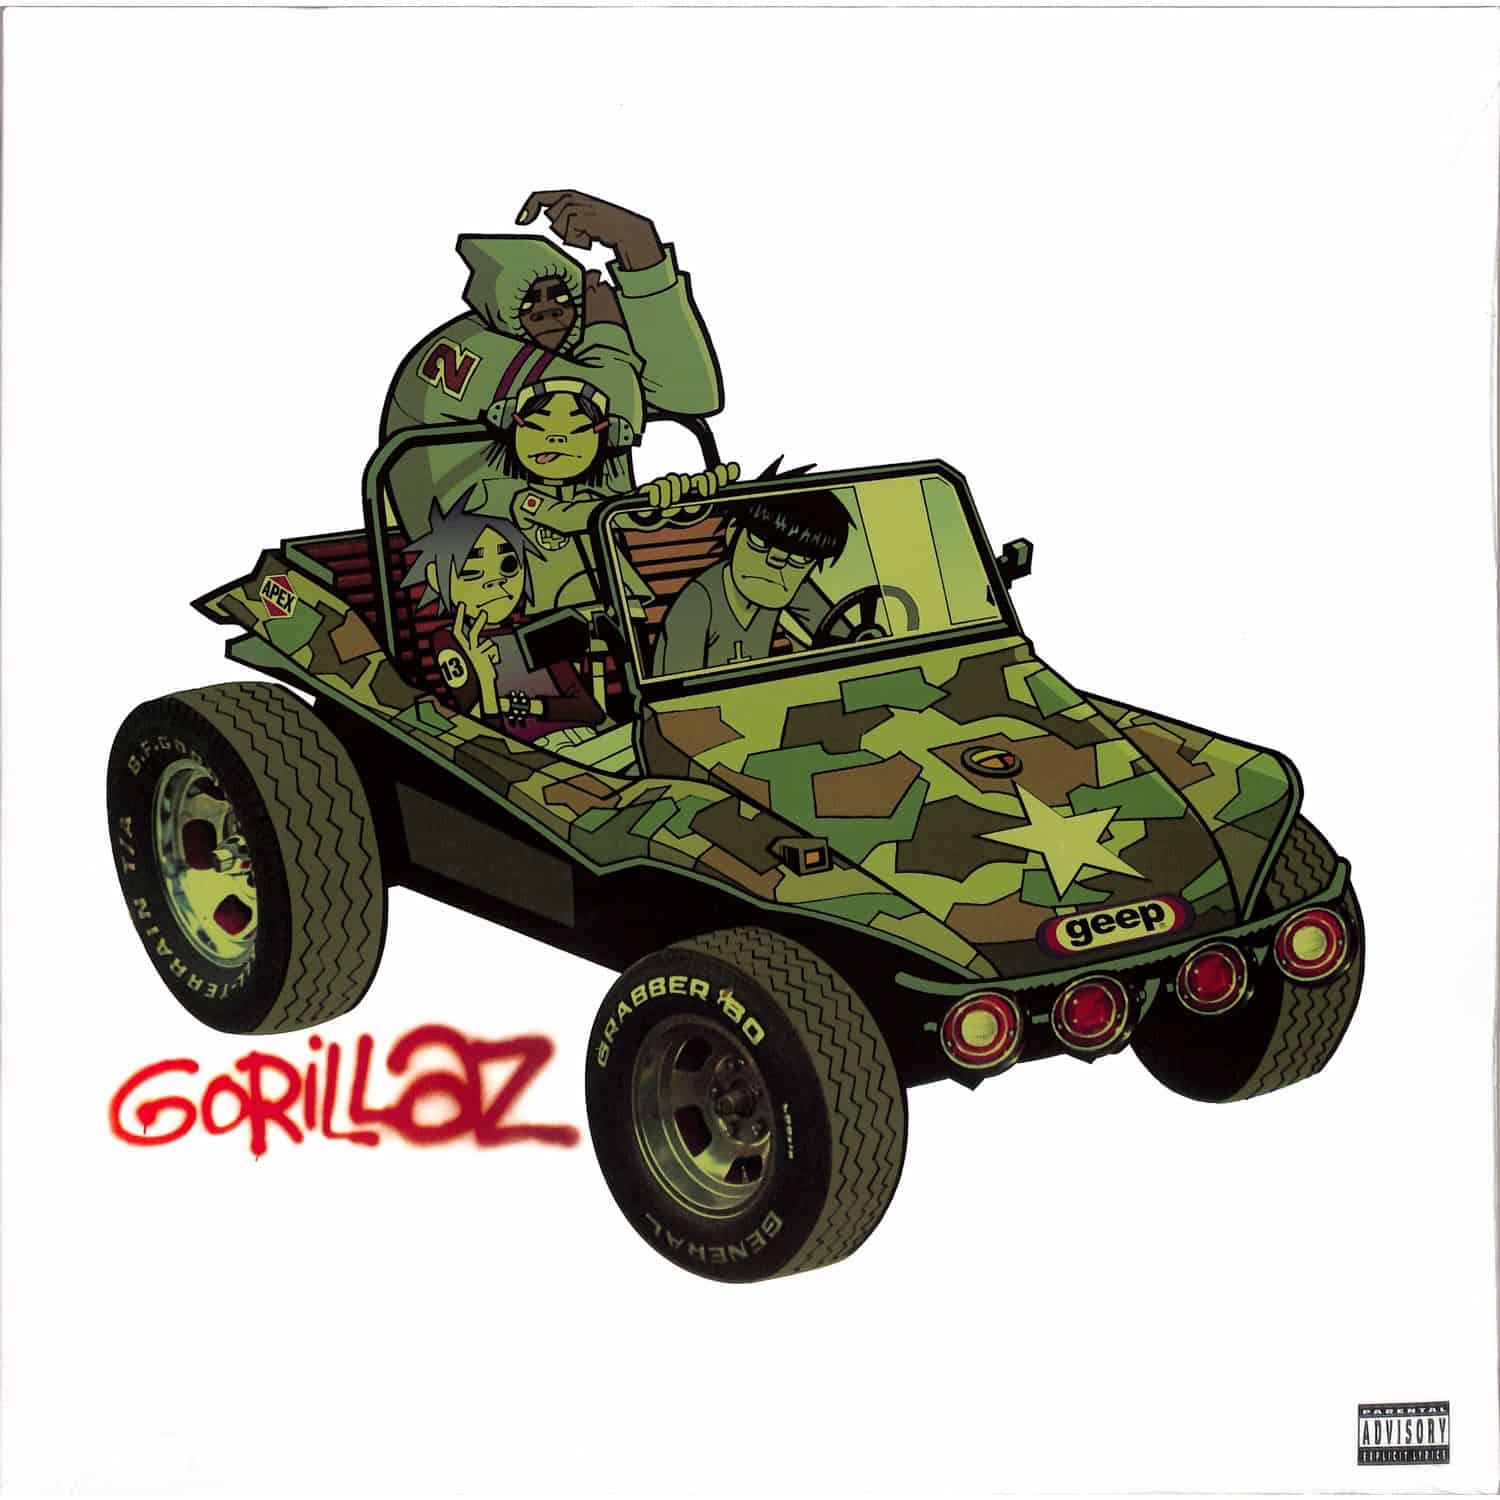 Gorillaz - GORILLAZ 